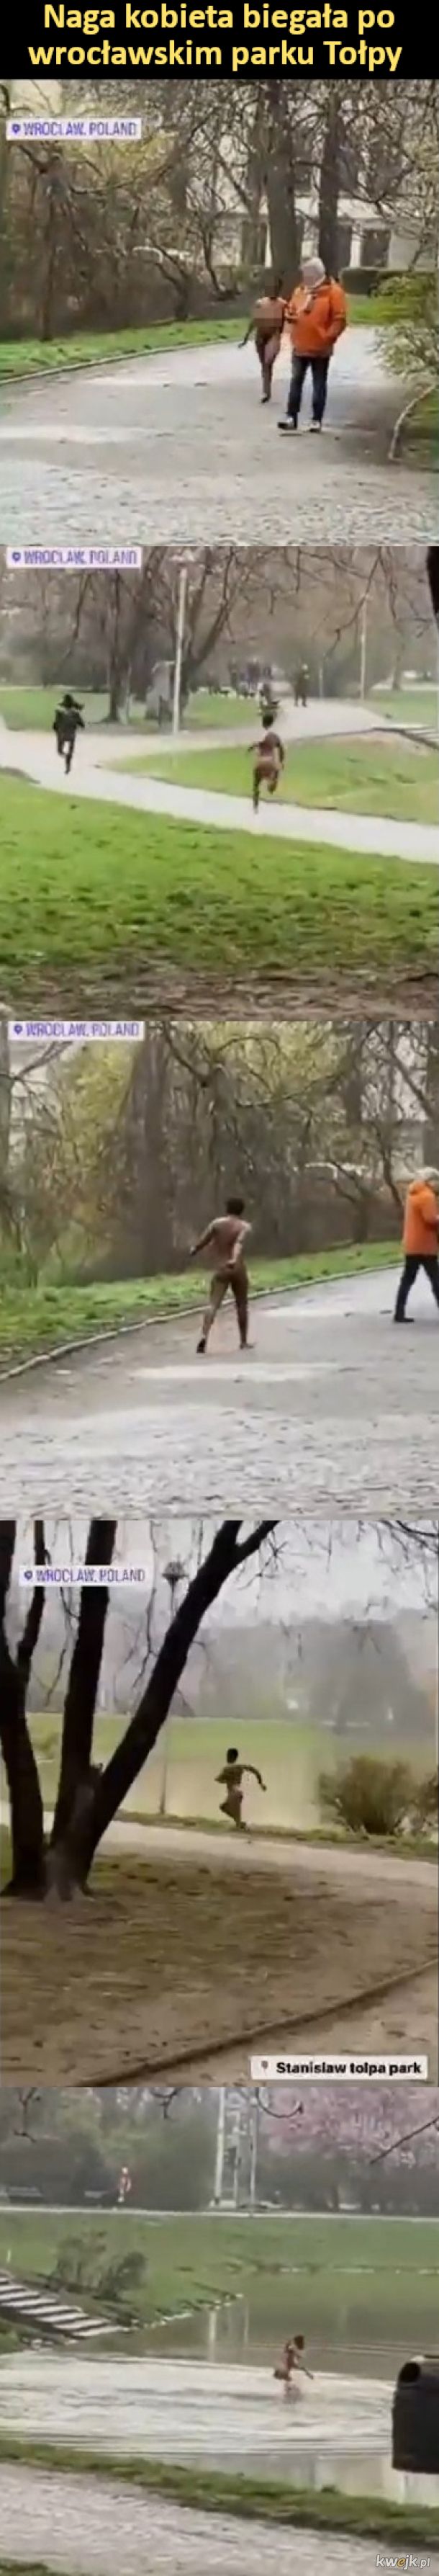 Naga kobieta biegała po wrocławskim parku